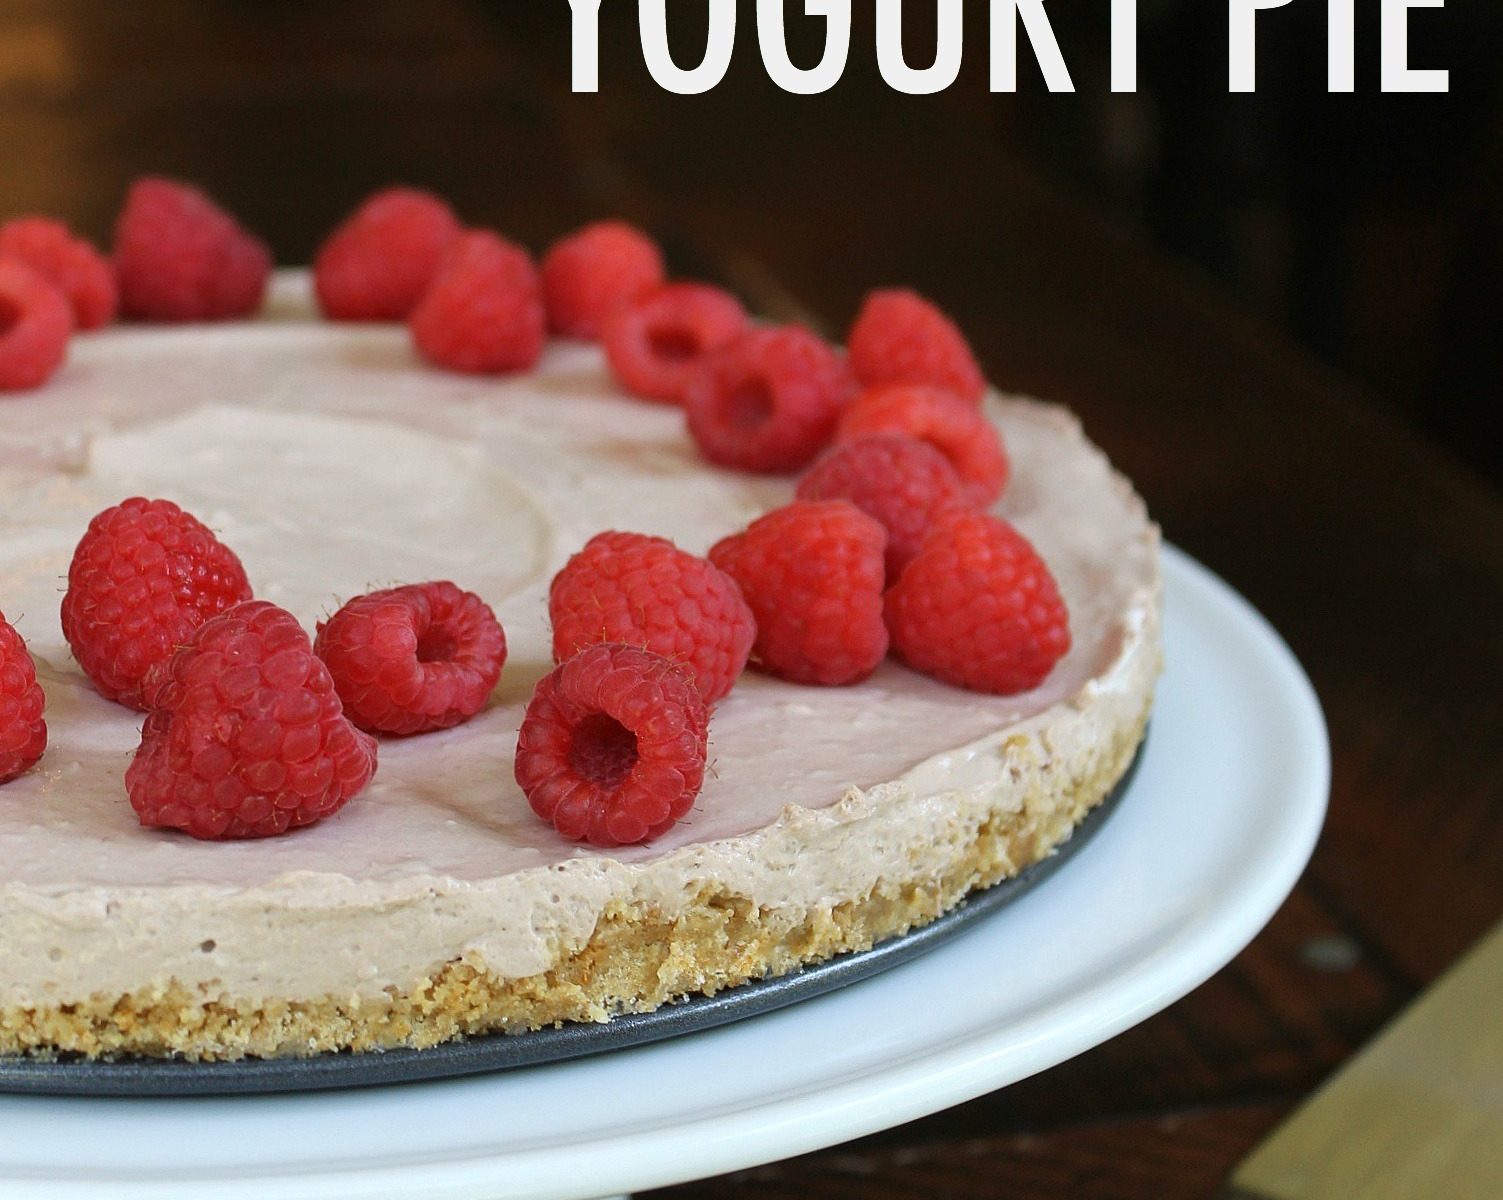 Chocolate Raspberry Yogurt Pie – A Delicious Dessert Option Made With Carnation Breakfast Essentials®